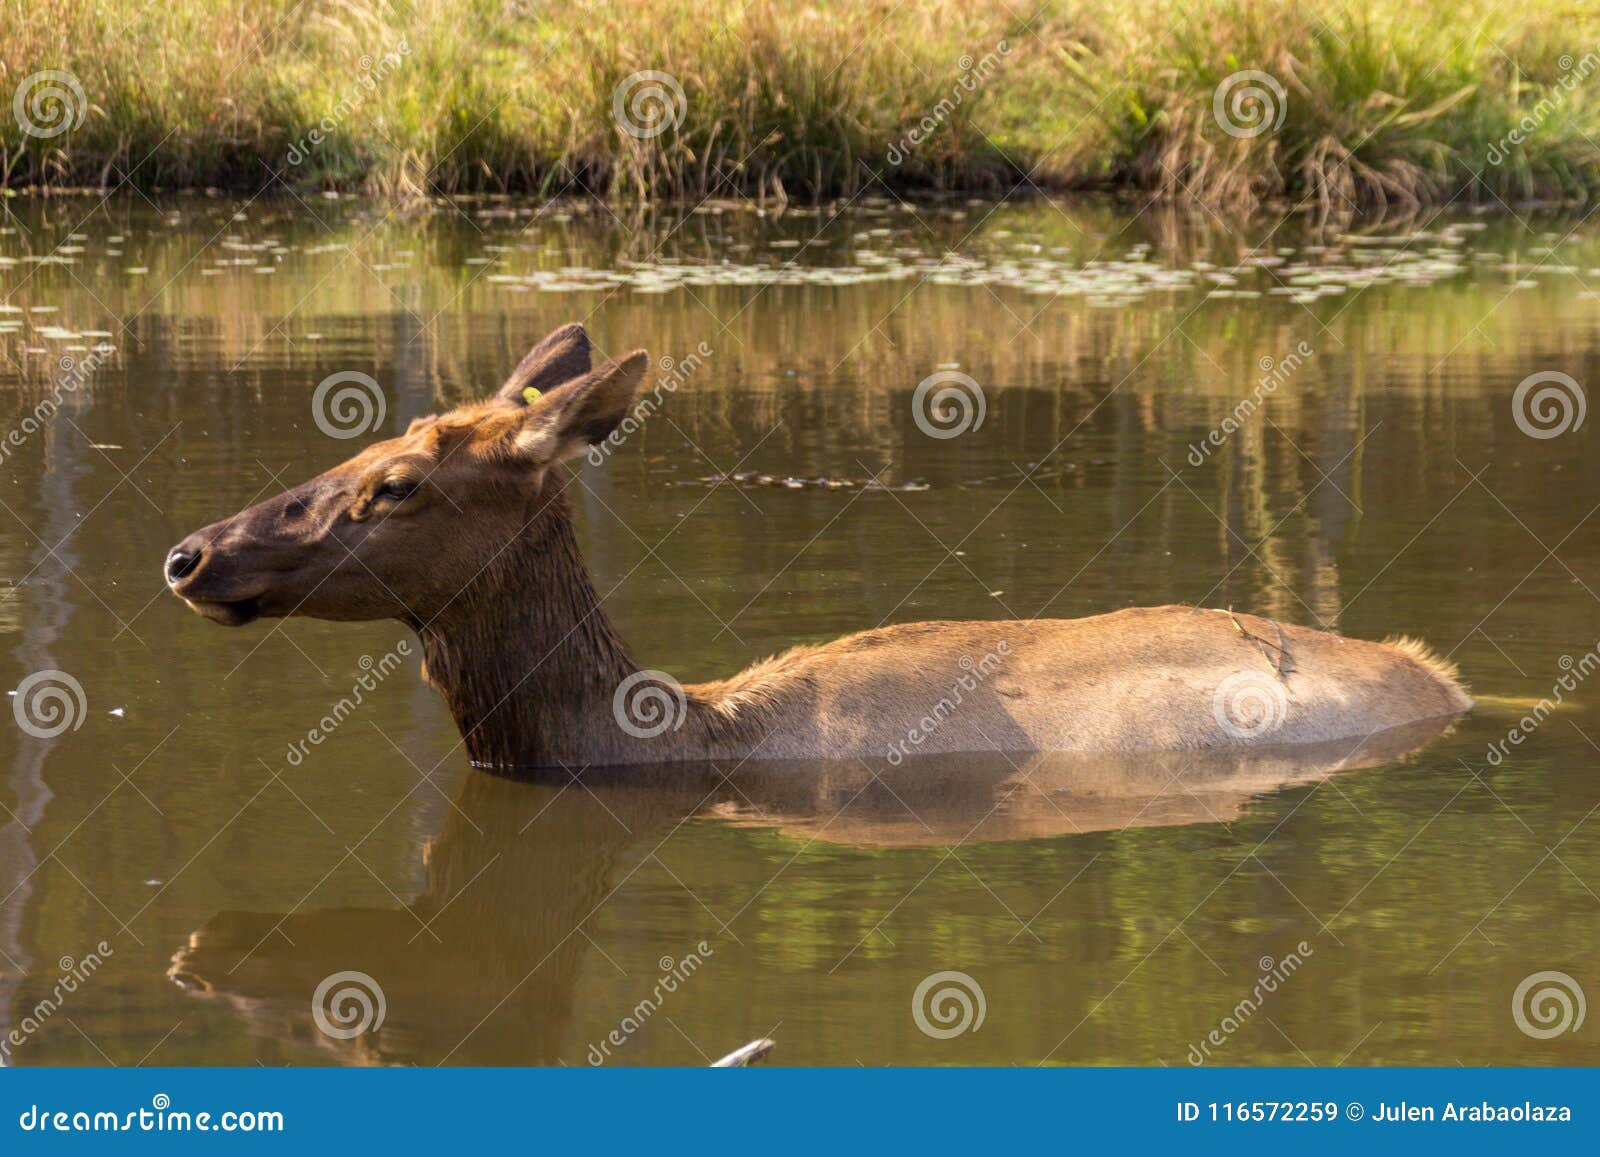 Deers σε Parc ωμέγα Καναδάς